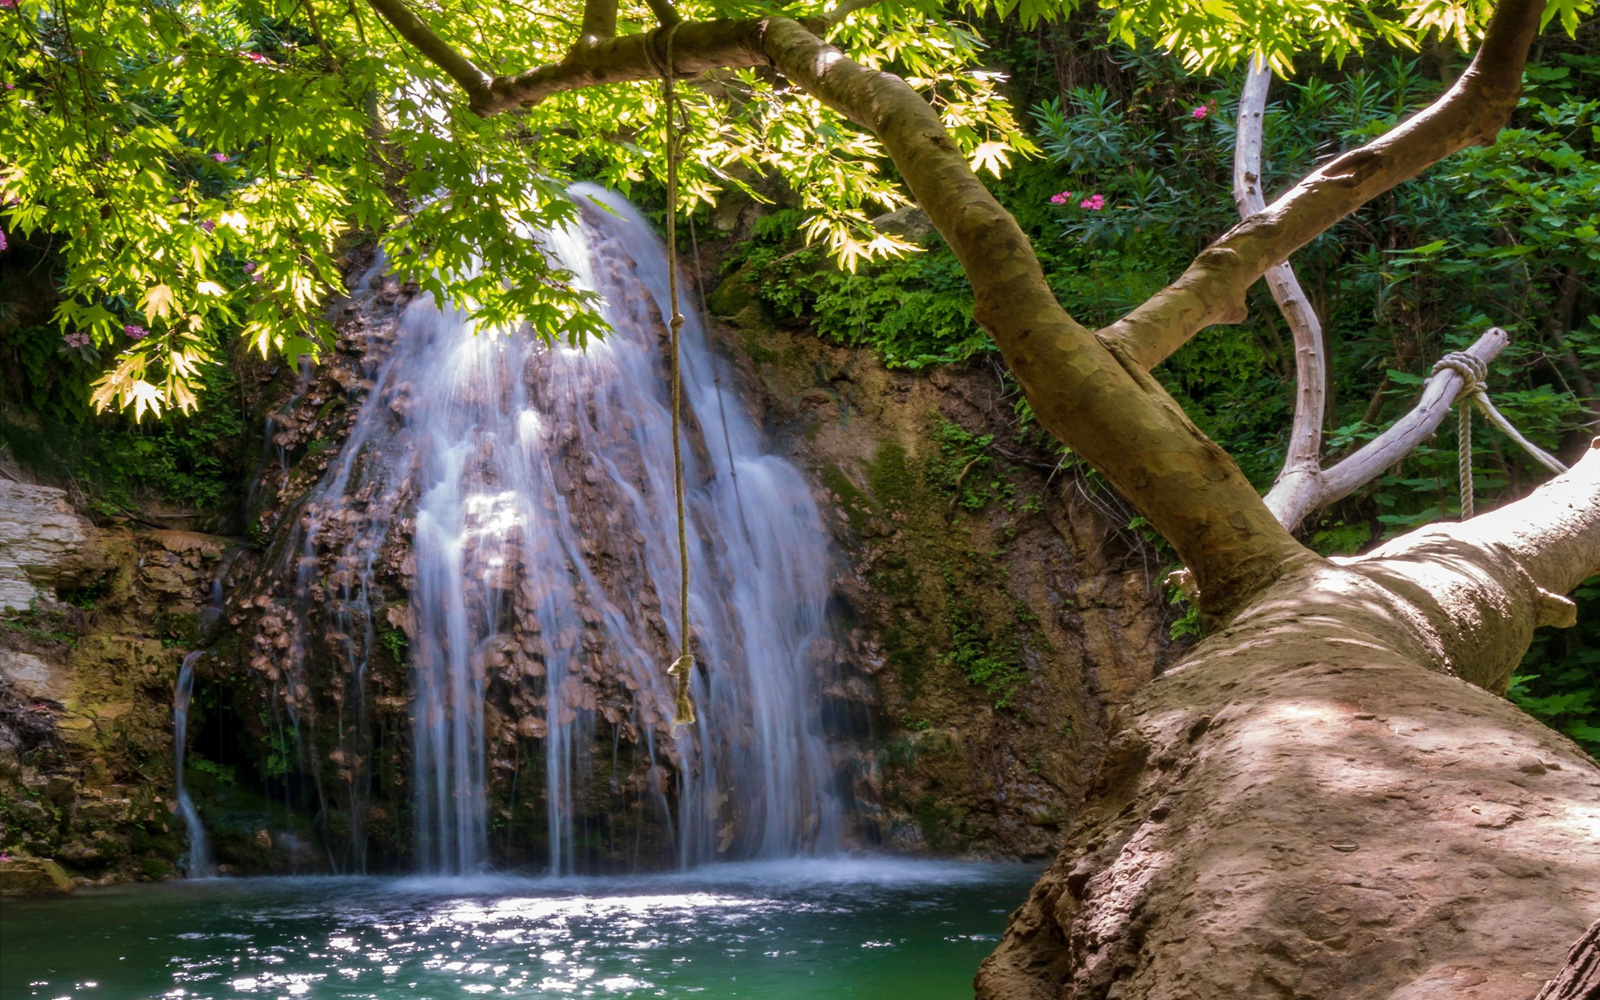 Adonis Baths Waterfalls in Cyprus